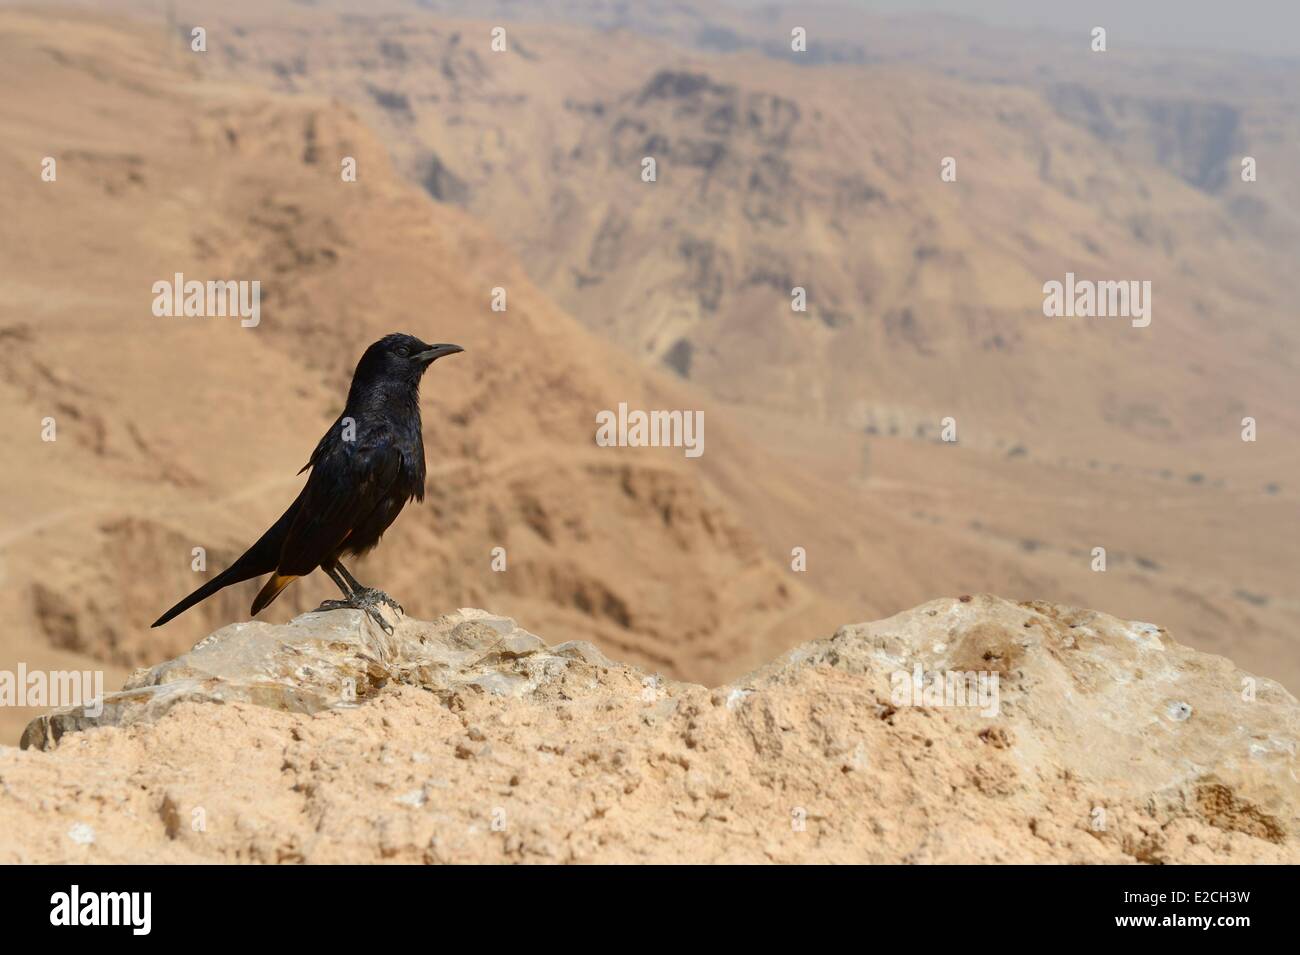 Israel, el desierto del Negev, la fortaleza de Masada, catalogada como Patrimonio de la Humanidad por la UNESCO, Tristram's Starling (Onychognathus tristramii) es una especie de aves de starling nativos de Israel, Jordania, en el noreste de Egipto (Península del Sinaí), en el oeste de Arabia Saudita, Yemen y Omán Foto de stock